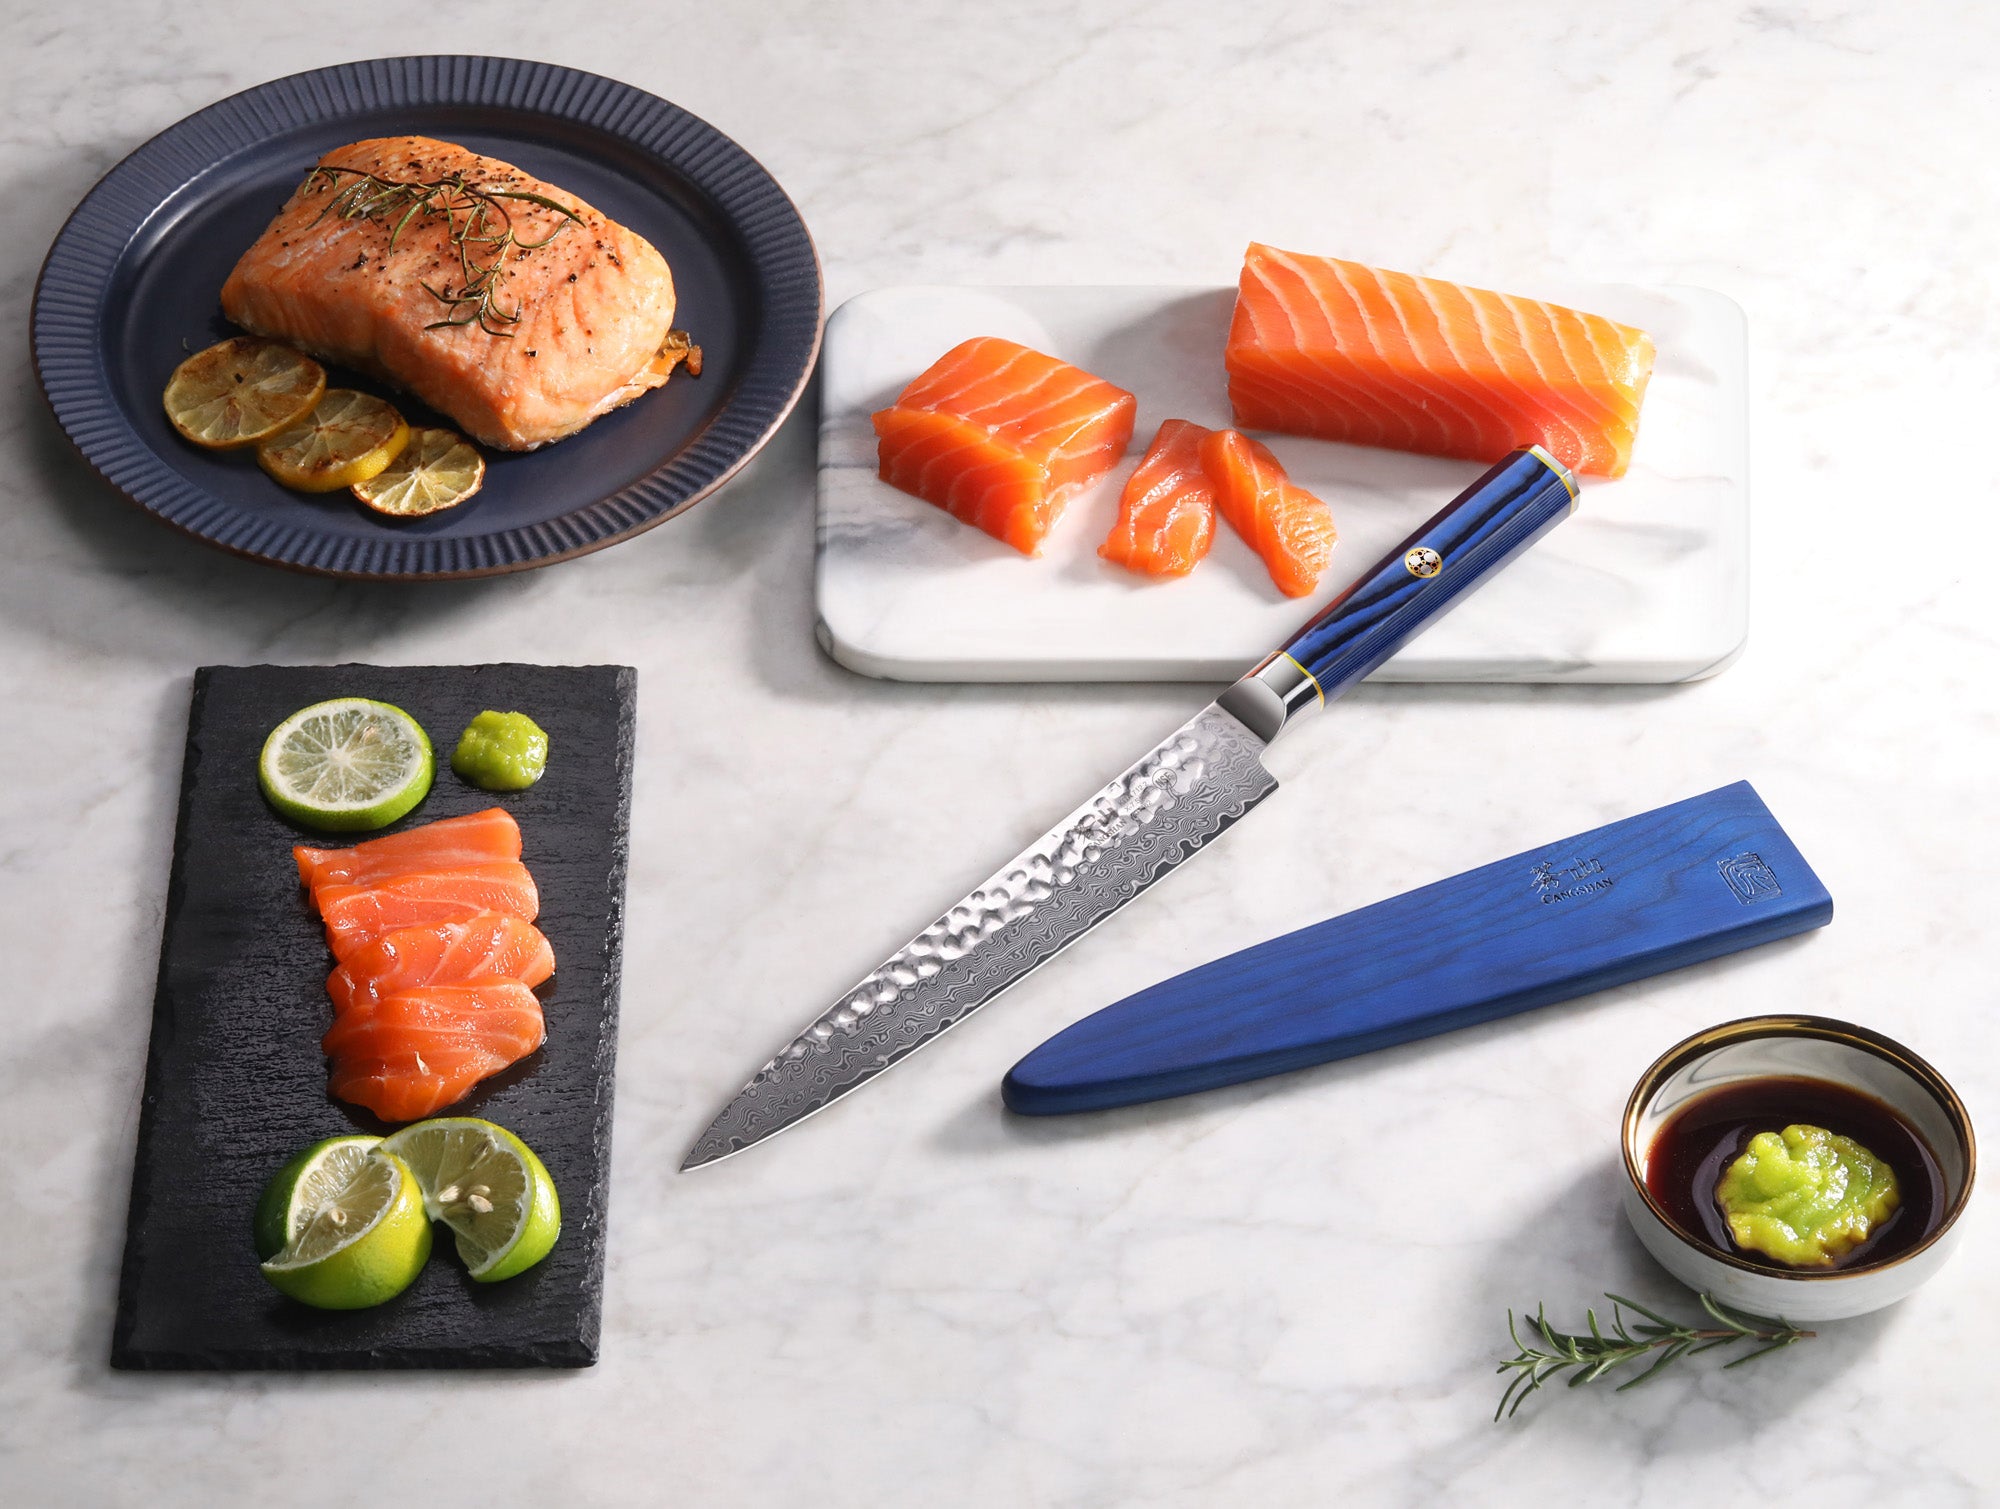 Cangshan Kita 8" Sashimi Knife